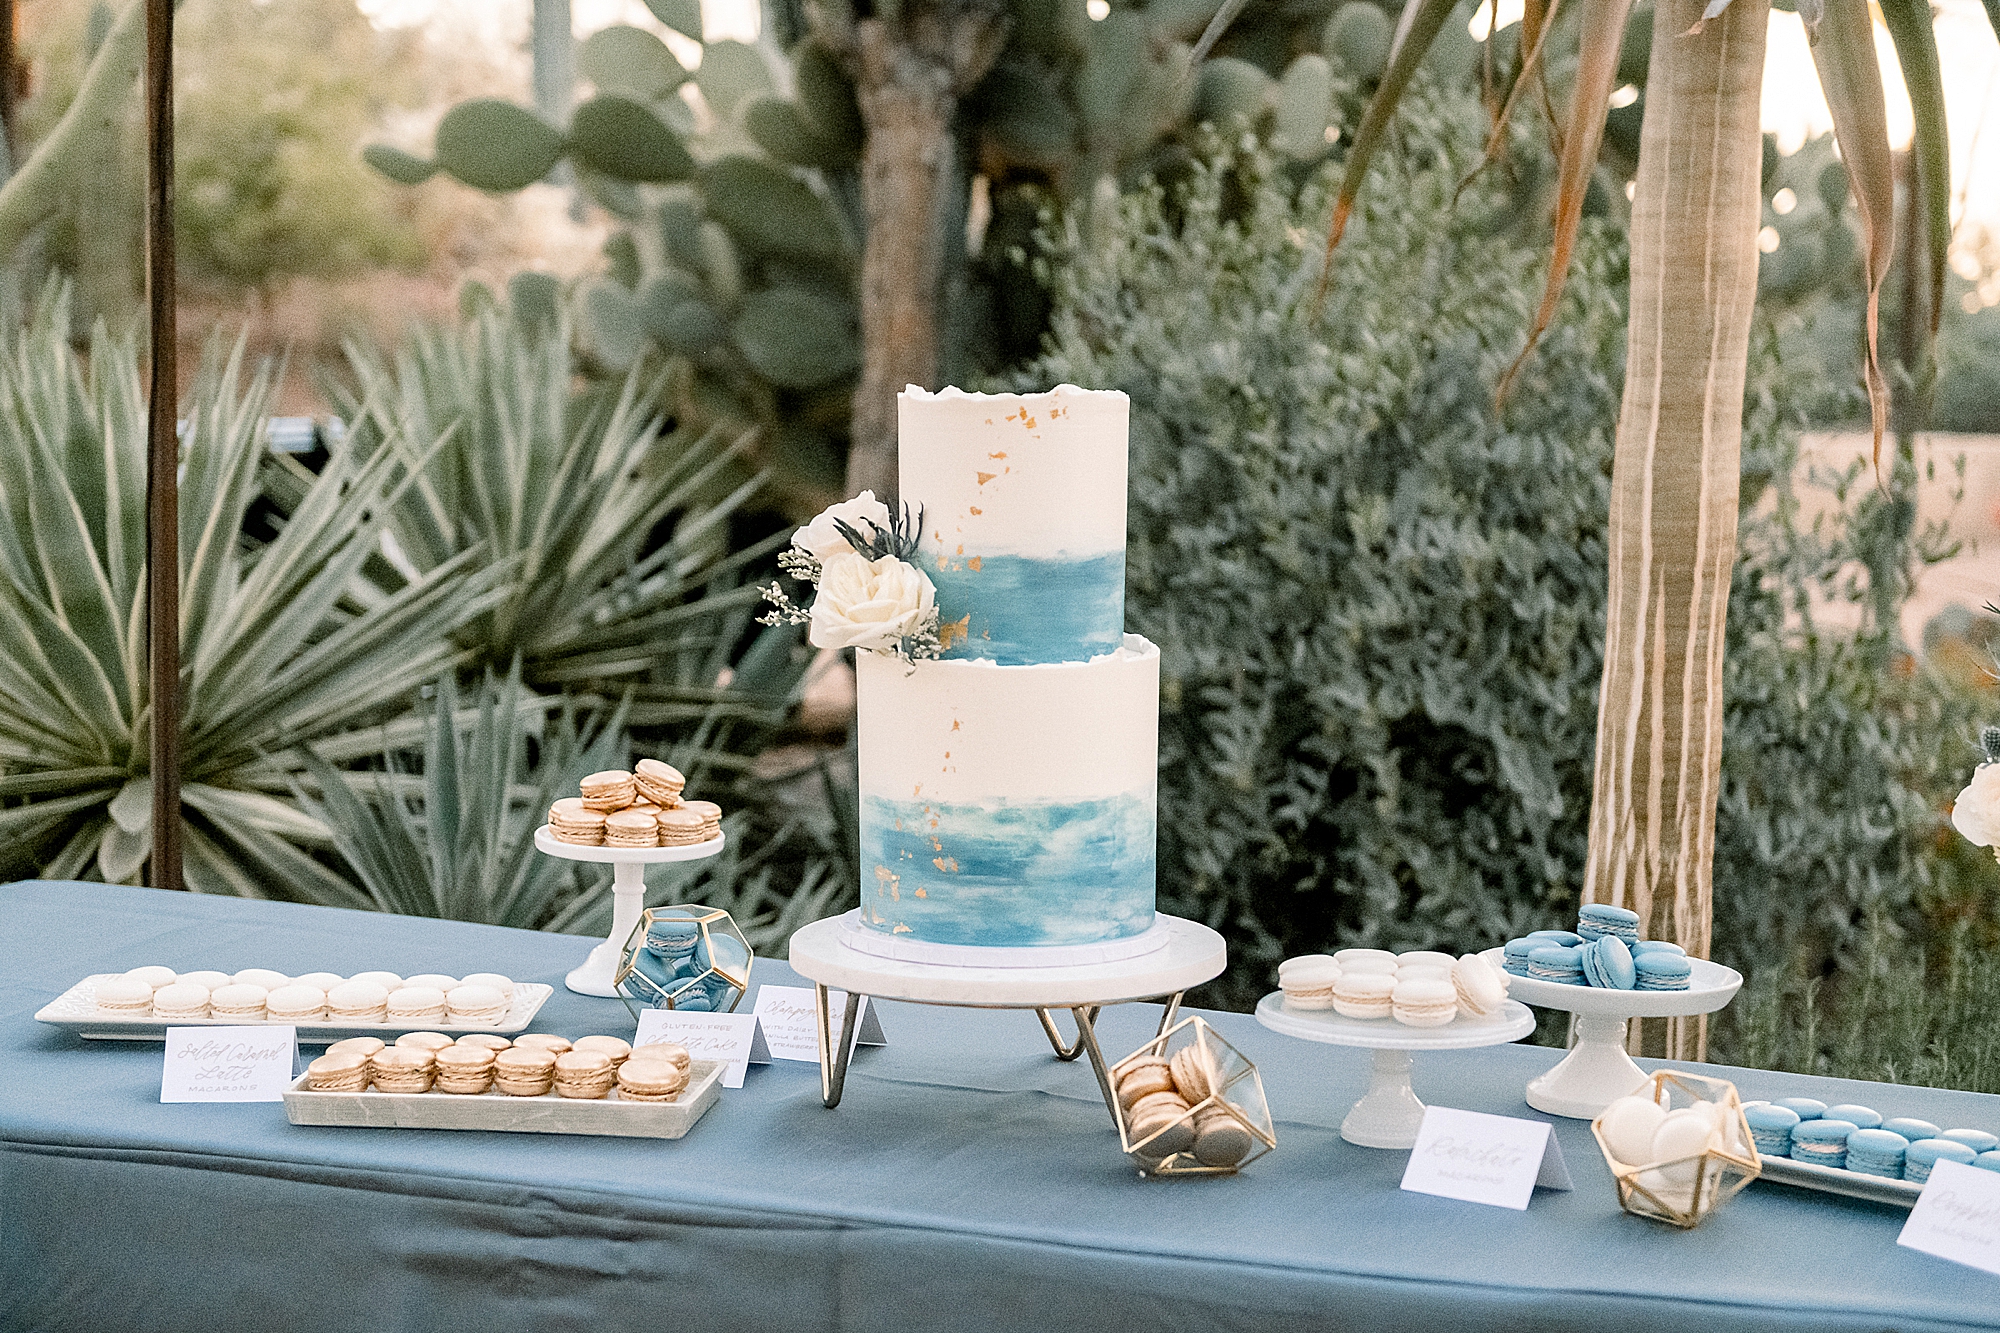 Cake for Wedding at Desert Botanical Garden